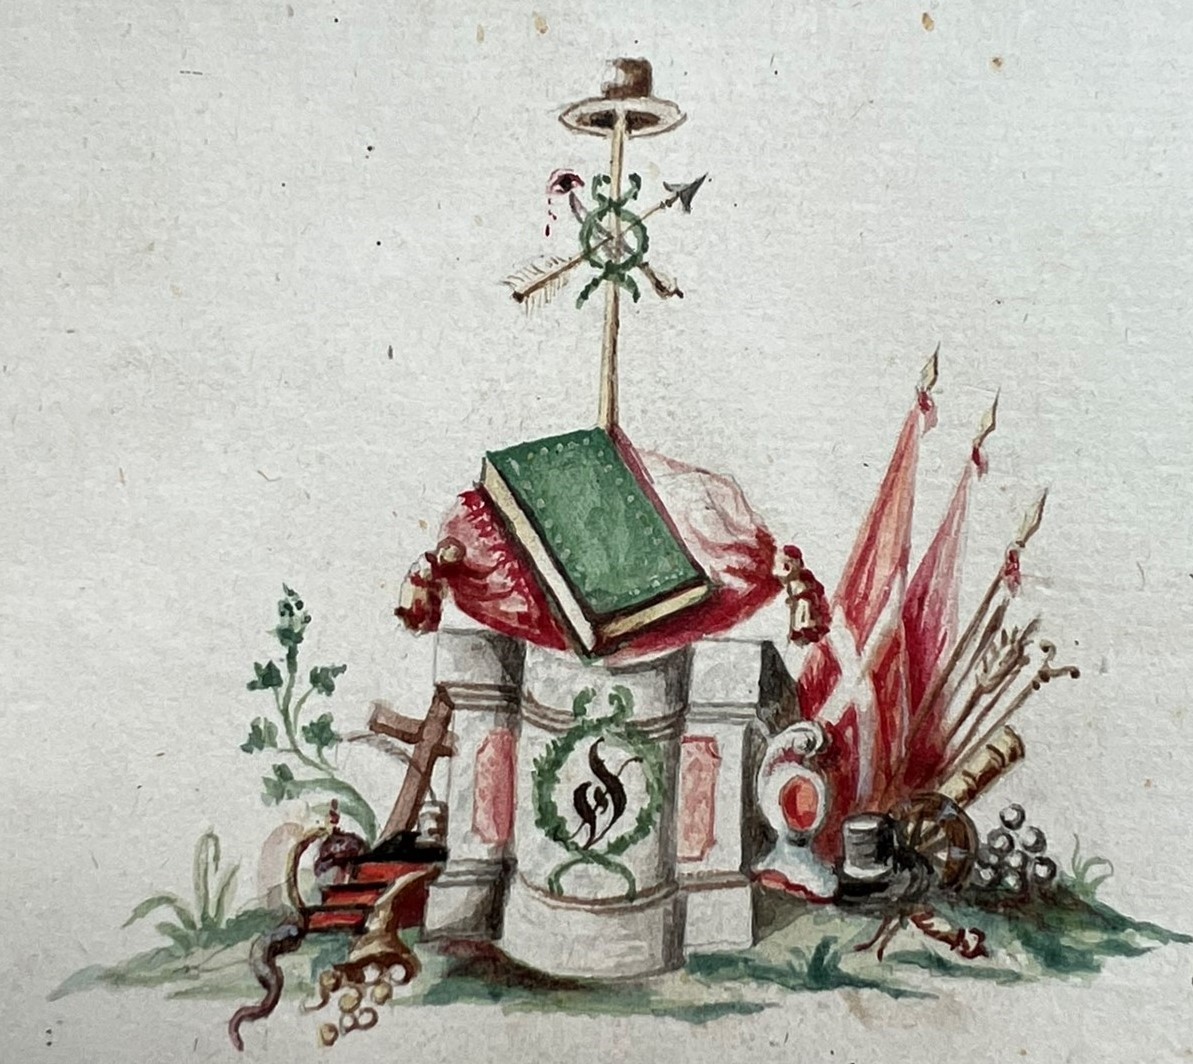 Landbuch von 1792